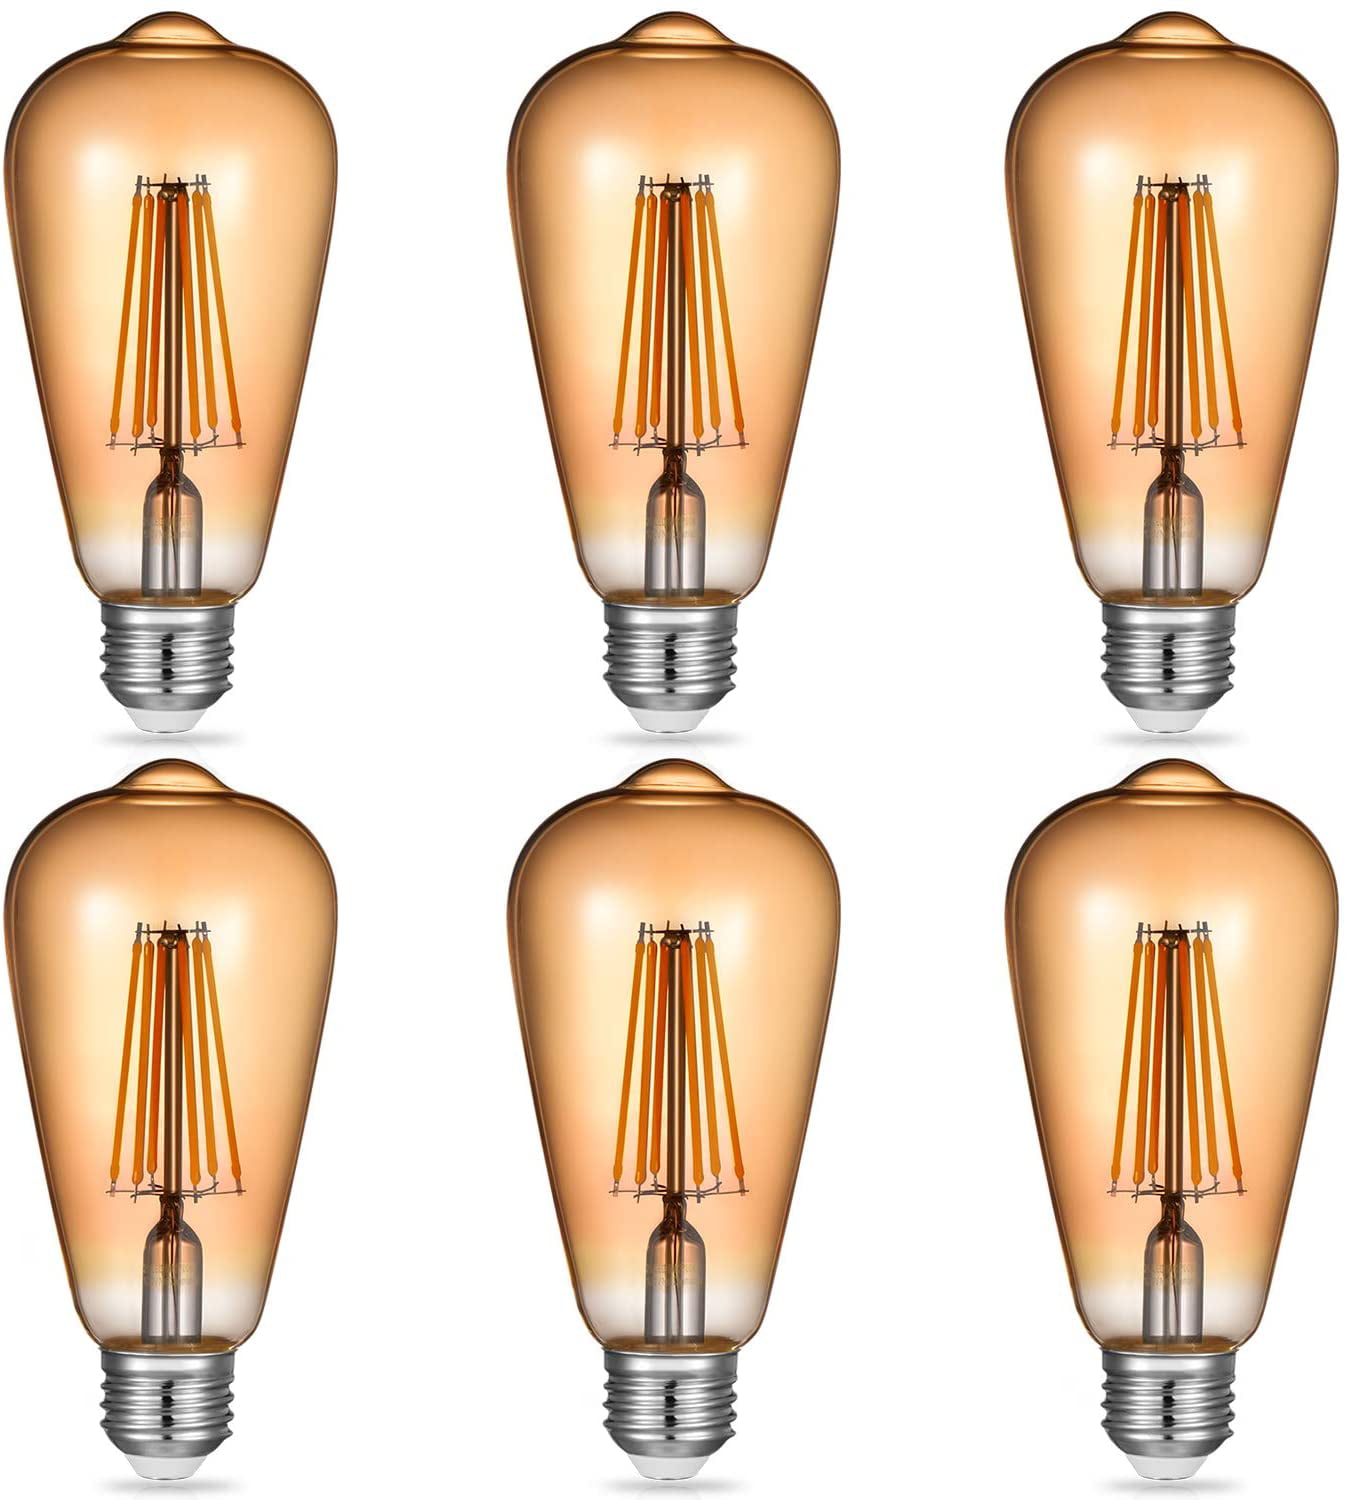 Vintage LED Edison Light Bulbs: 6 Watt 2700K Soft White Lightbulbs Non Dimmable E26 Base 6 Pack Filament Light Bulb Set 60W Equivalent